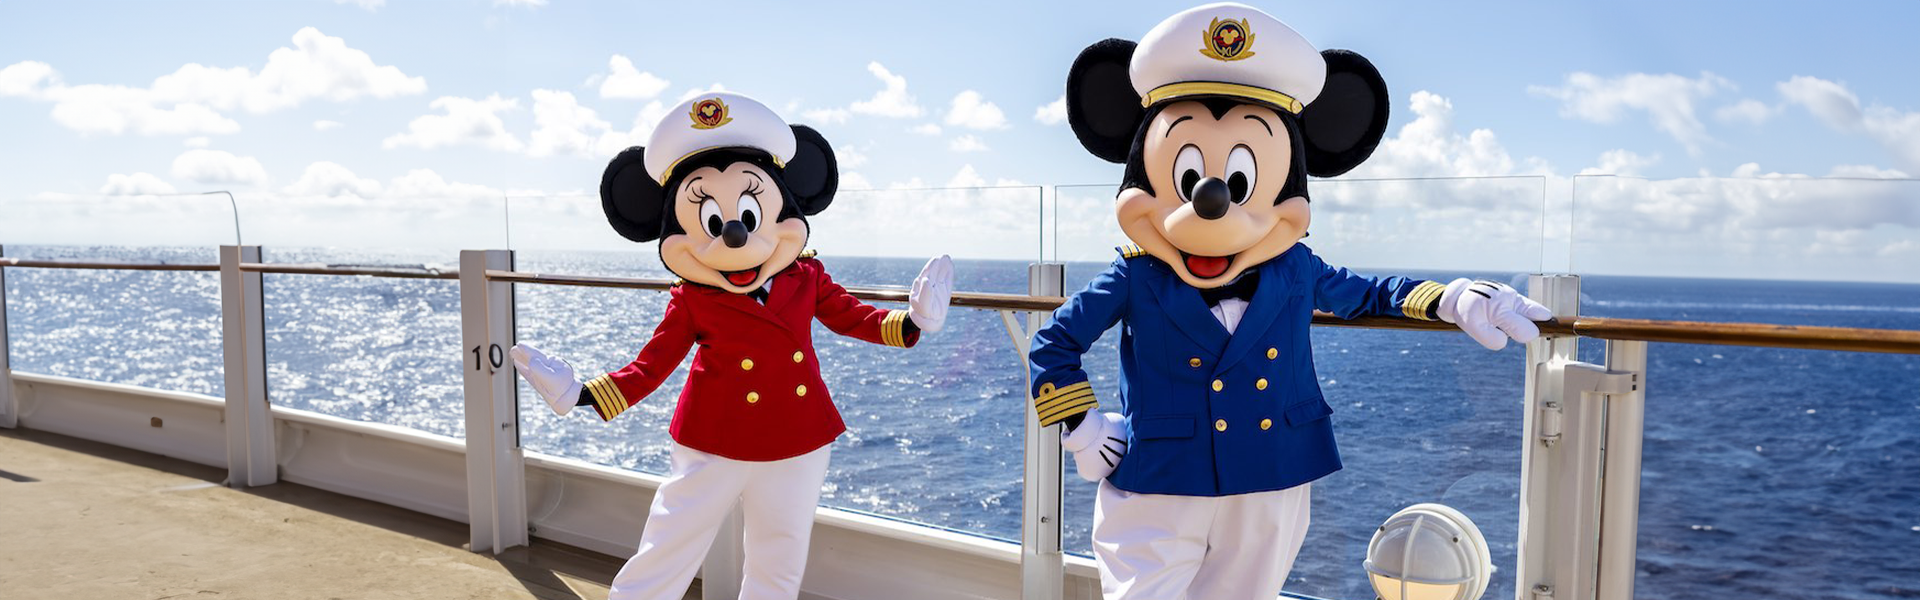 Disney Style Cruises to the Mediterranean Sea 